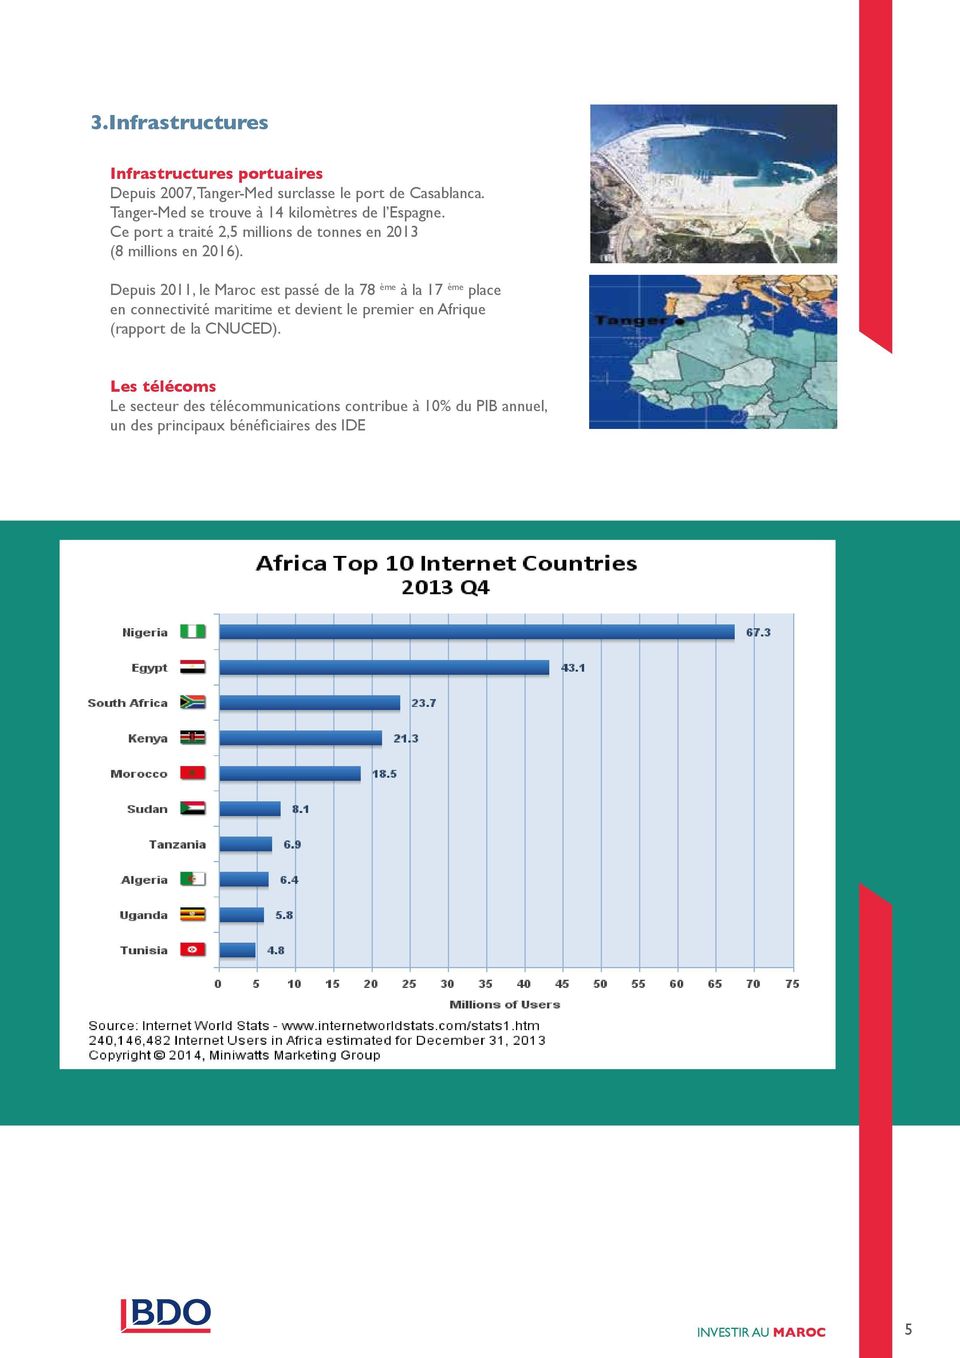 Depuis 2011, le Maroc est passé de la 78 ème à la 17 ème place en connectivité maritime et devient le premier en Afrique